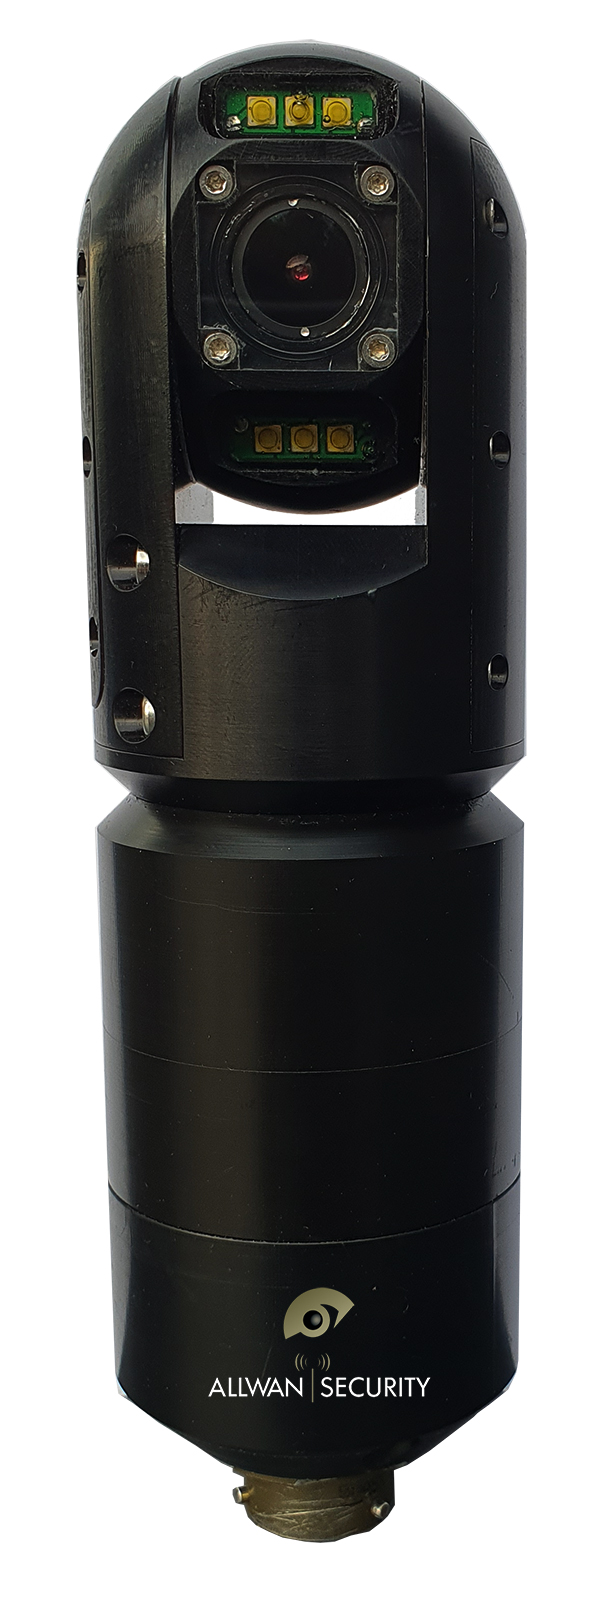 telescopic pole camera security defence Pan Tilt 360